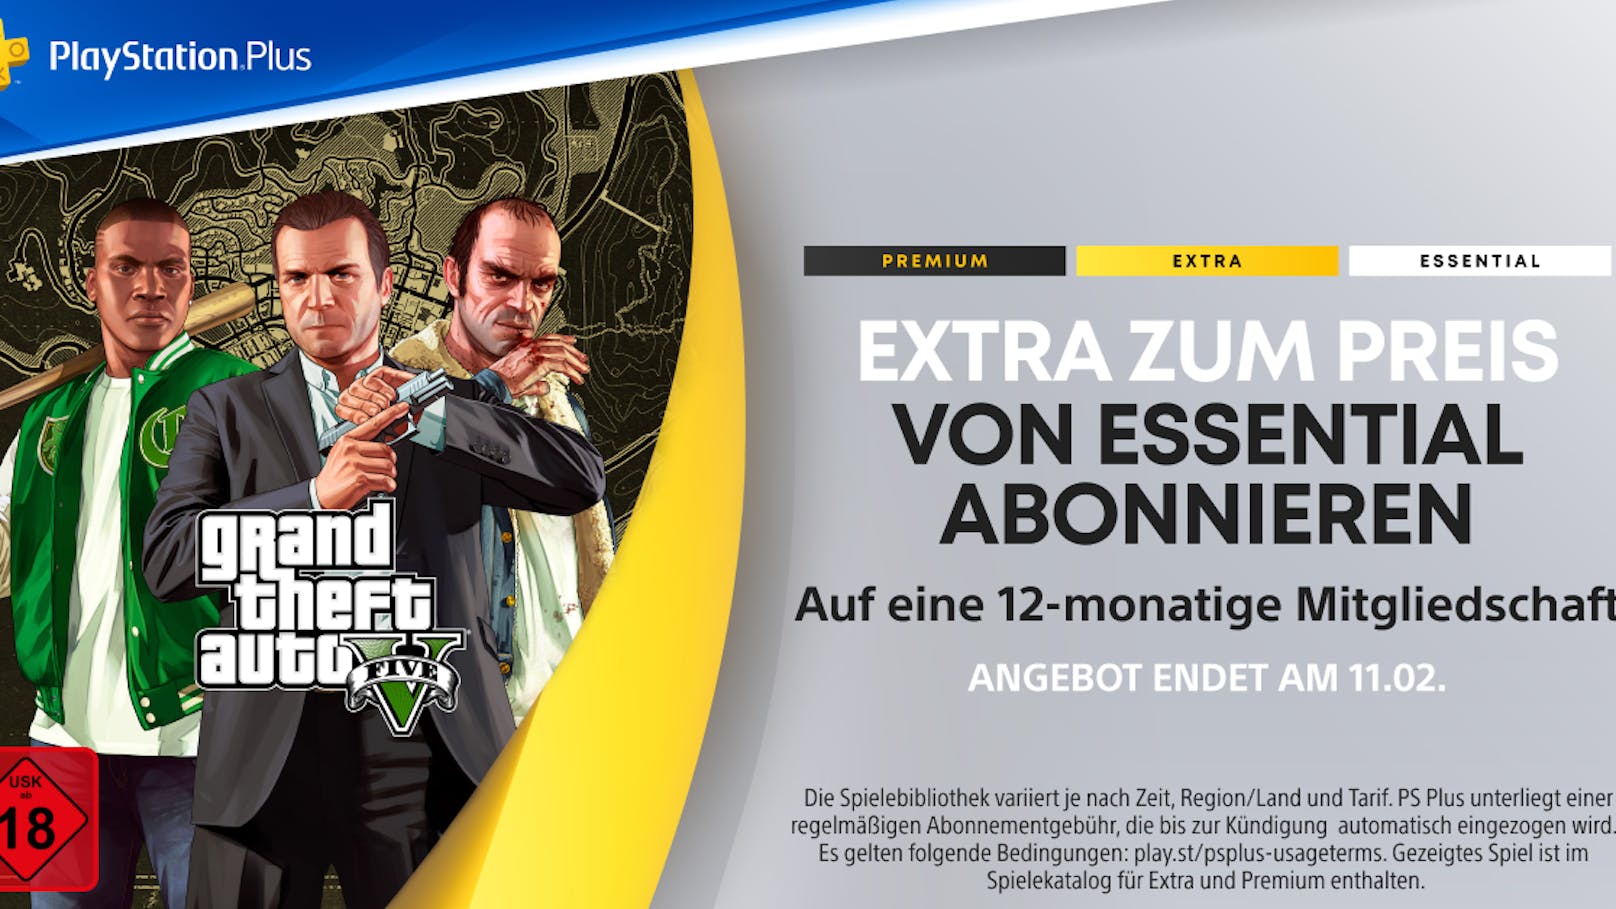 PlayStation Plus: 12 Monate Extra zum Preis von Essential verfügbar.